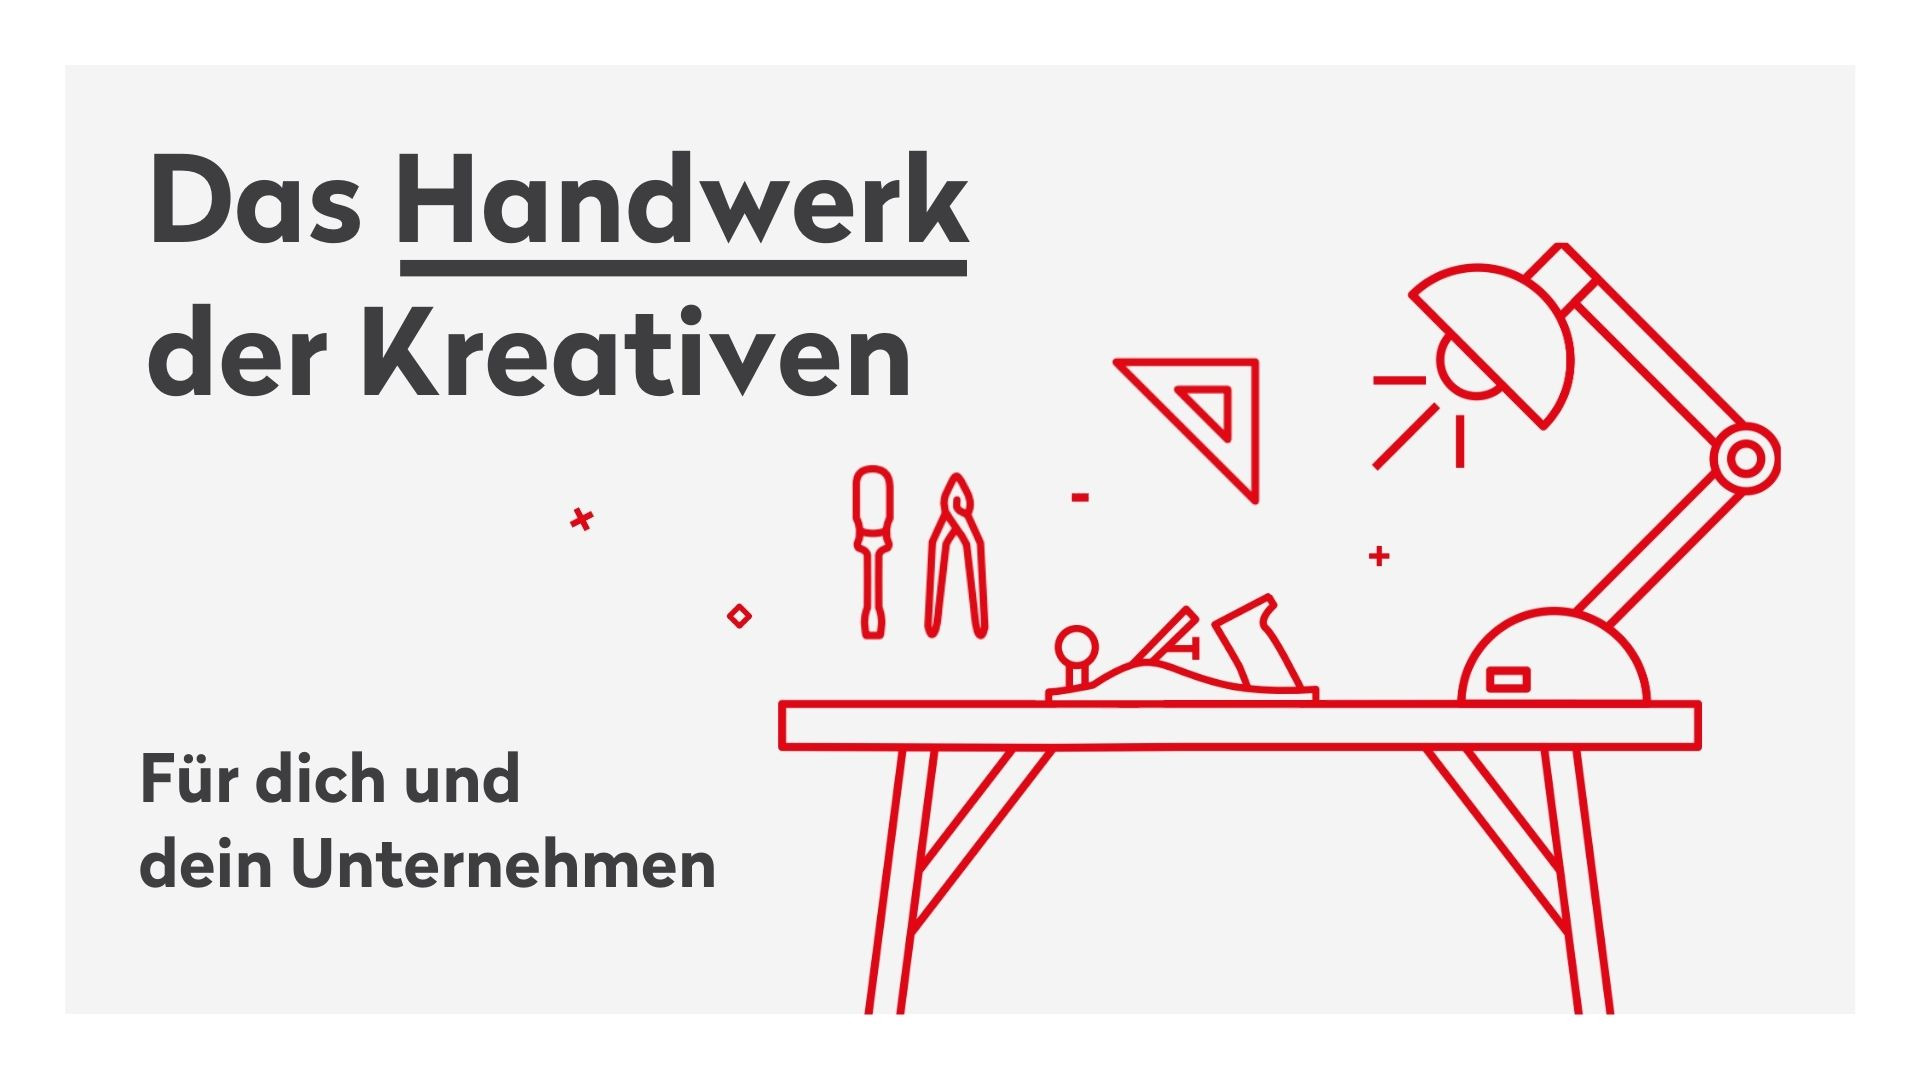 Coverfoto des Handbuches "Das Handwerk der Kreativen - Für dich und dein Unternehmen" der Kreativwirtschaft Austria 